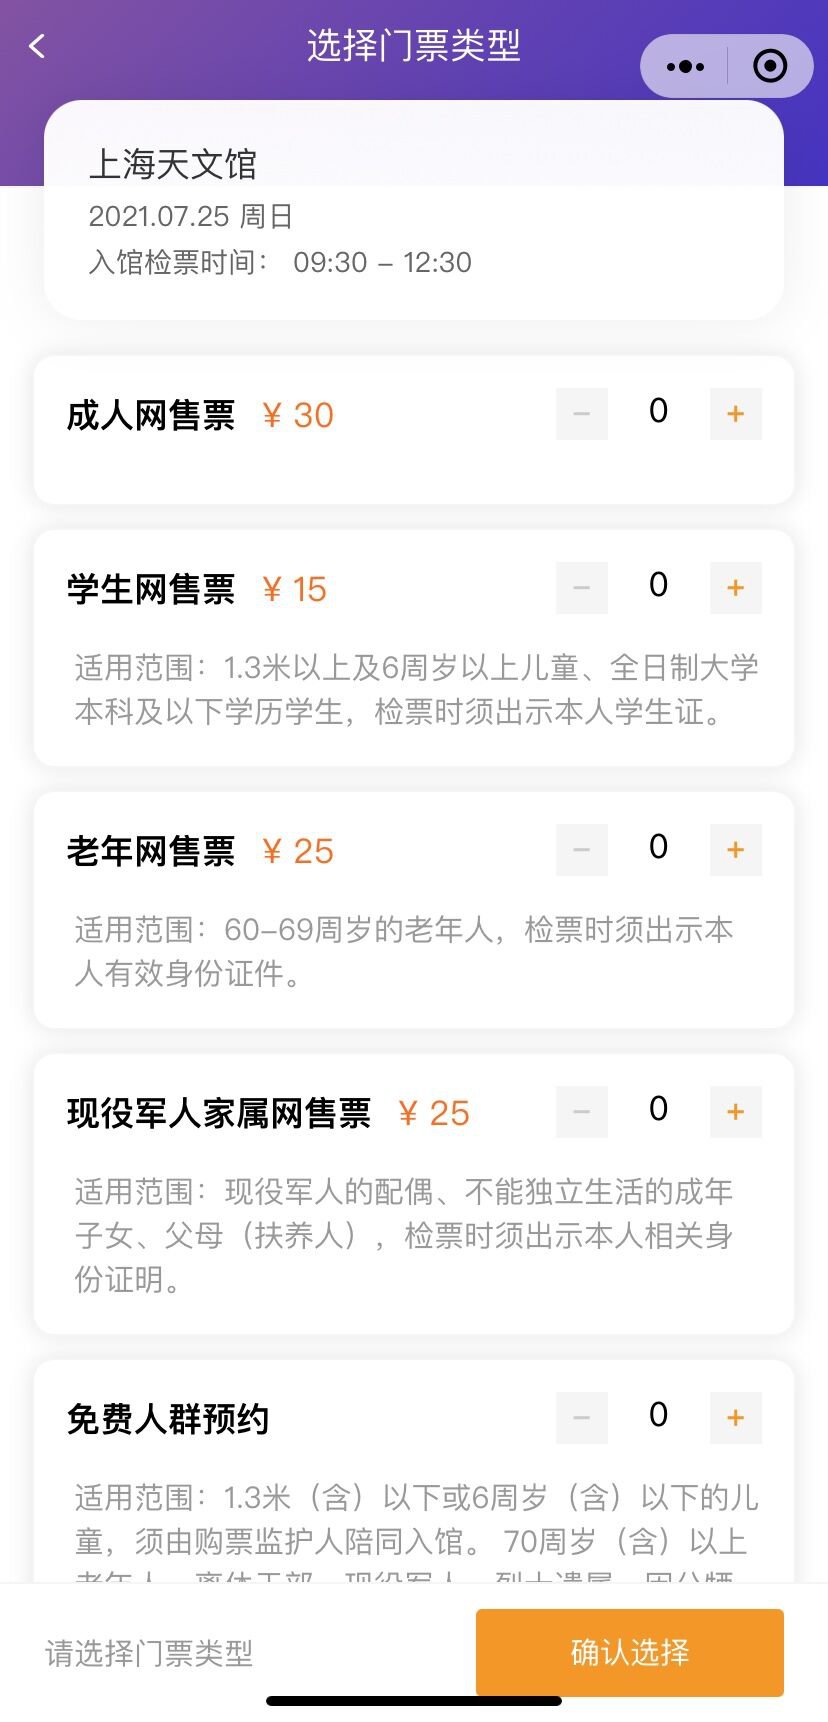 上海天文館門票預約入口+預約操作流程